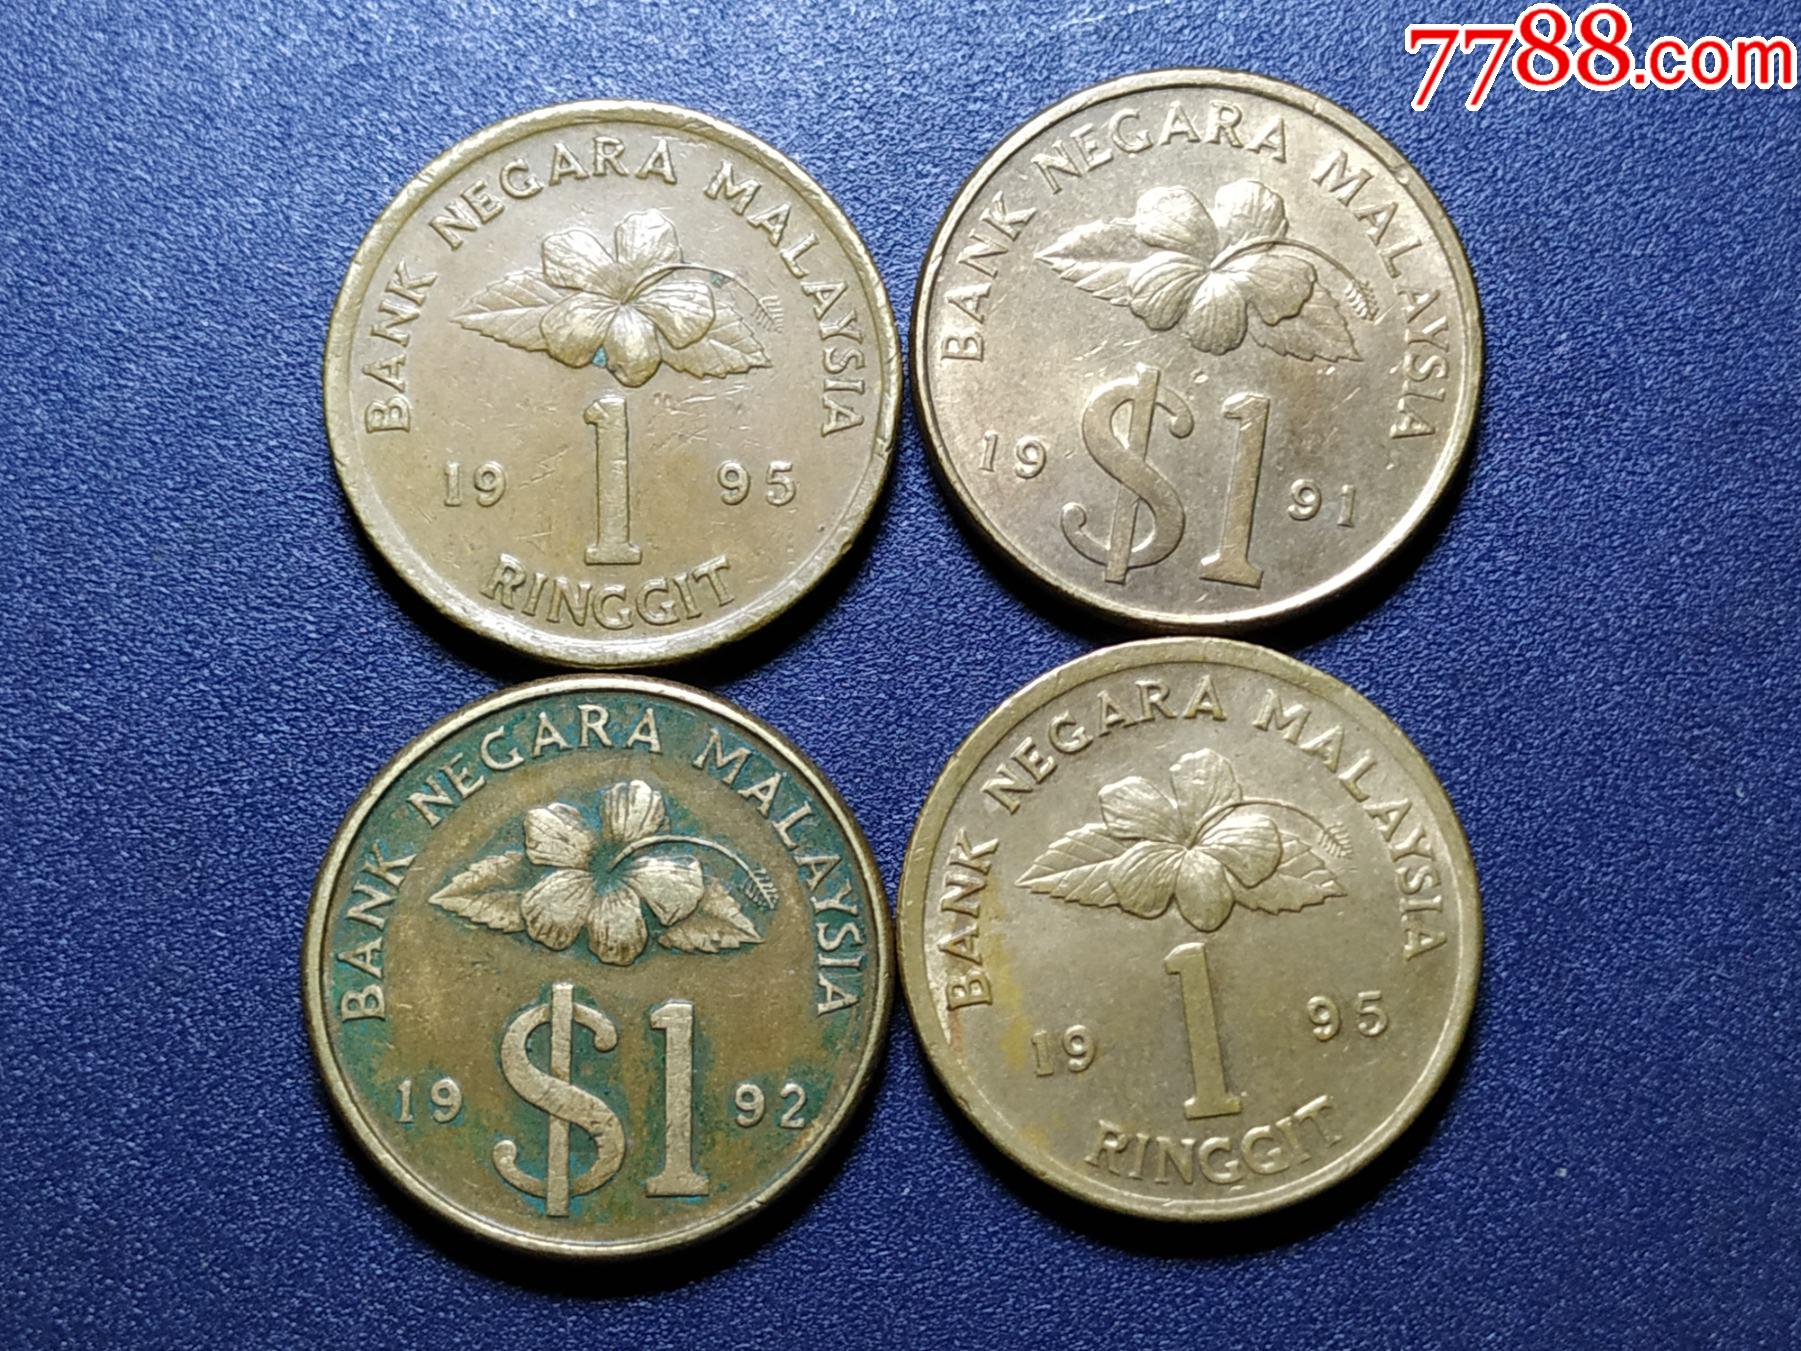 马来西亚人民币图片